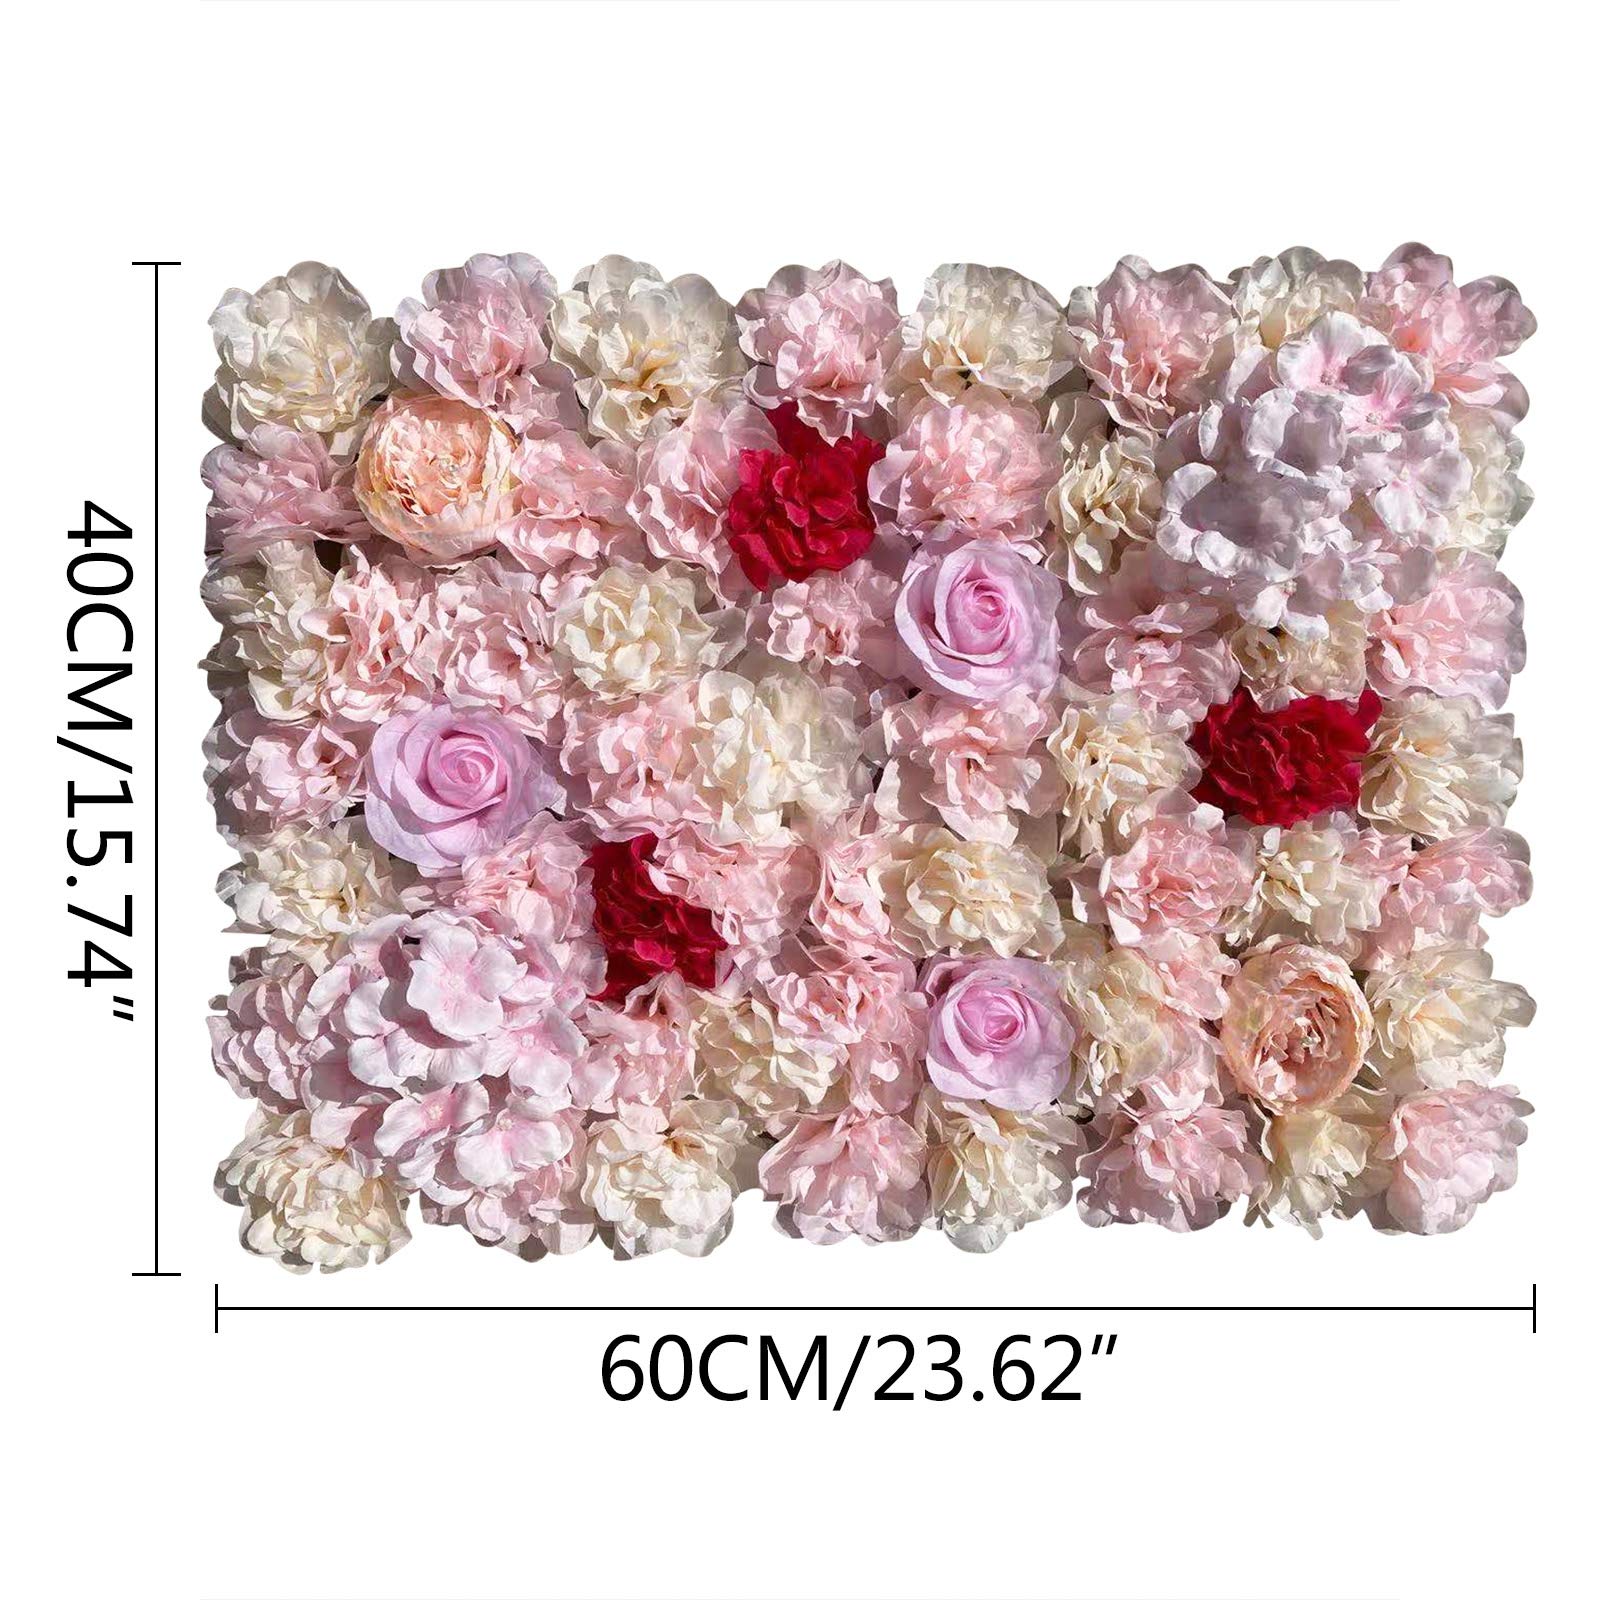 10 Stück Künstliche Blumenwand 40x60cm Blumen Wandpaneel Rosenwand